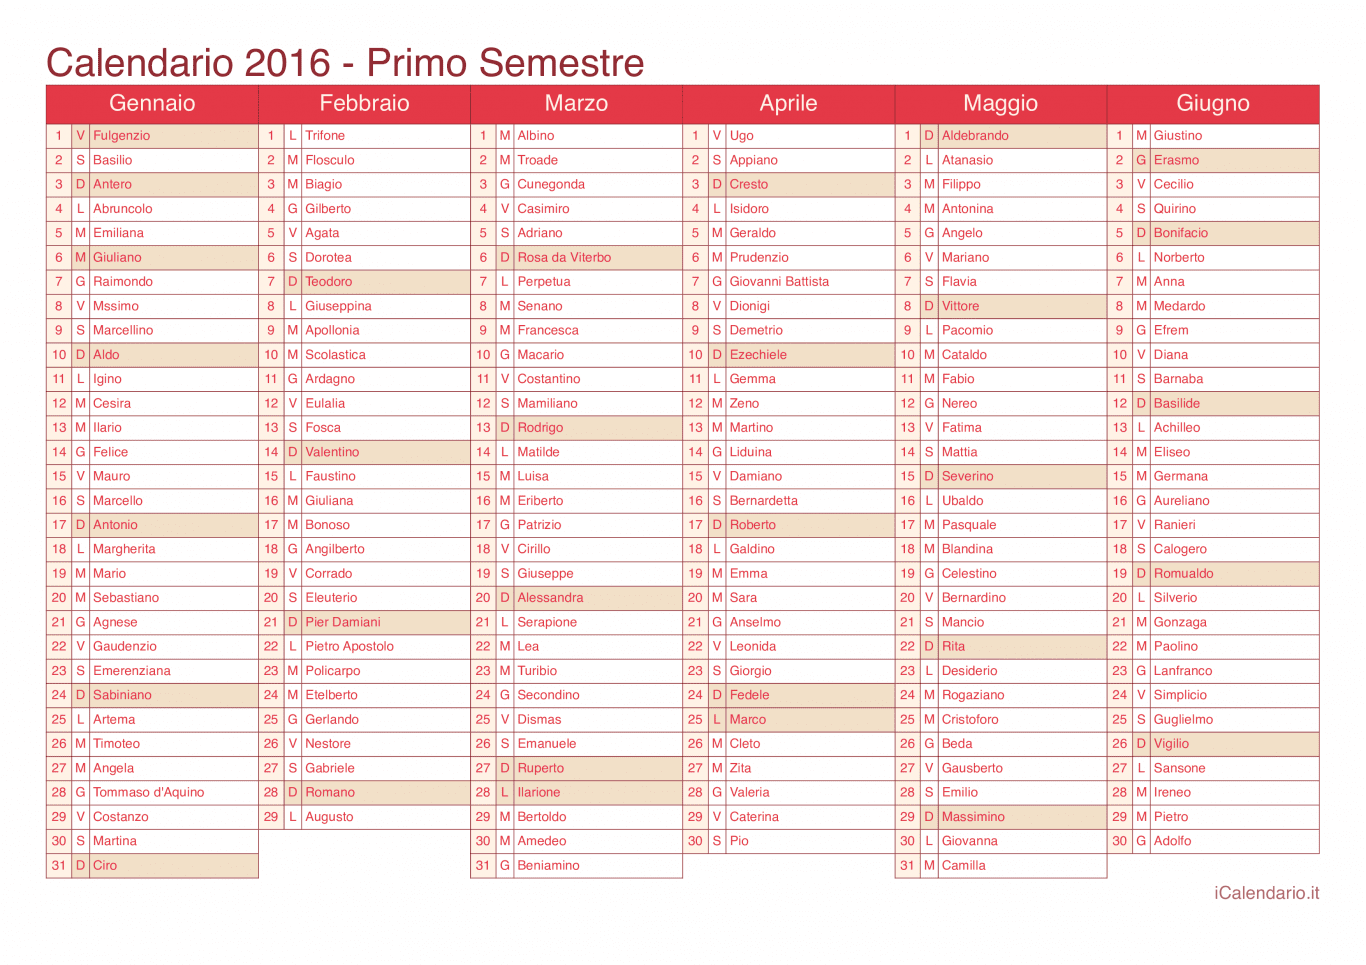 Calendario semestrale 2016 con santi e festivi - Cherry